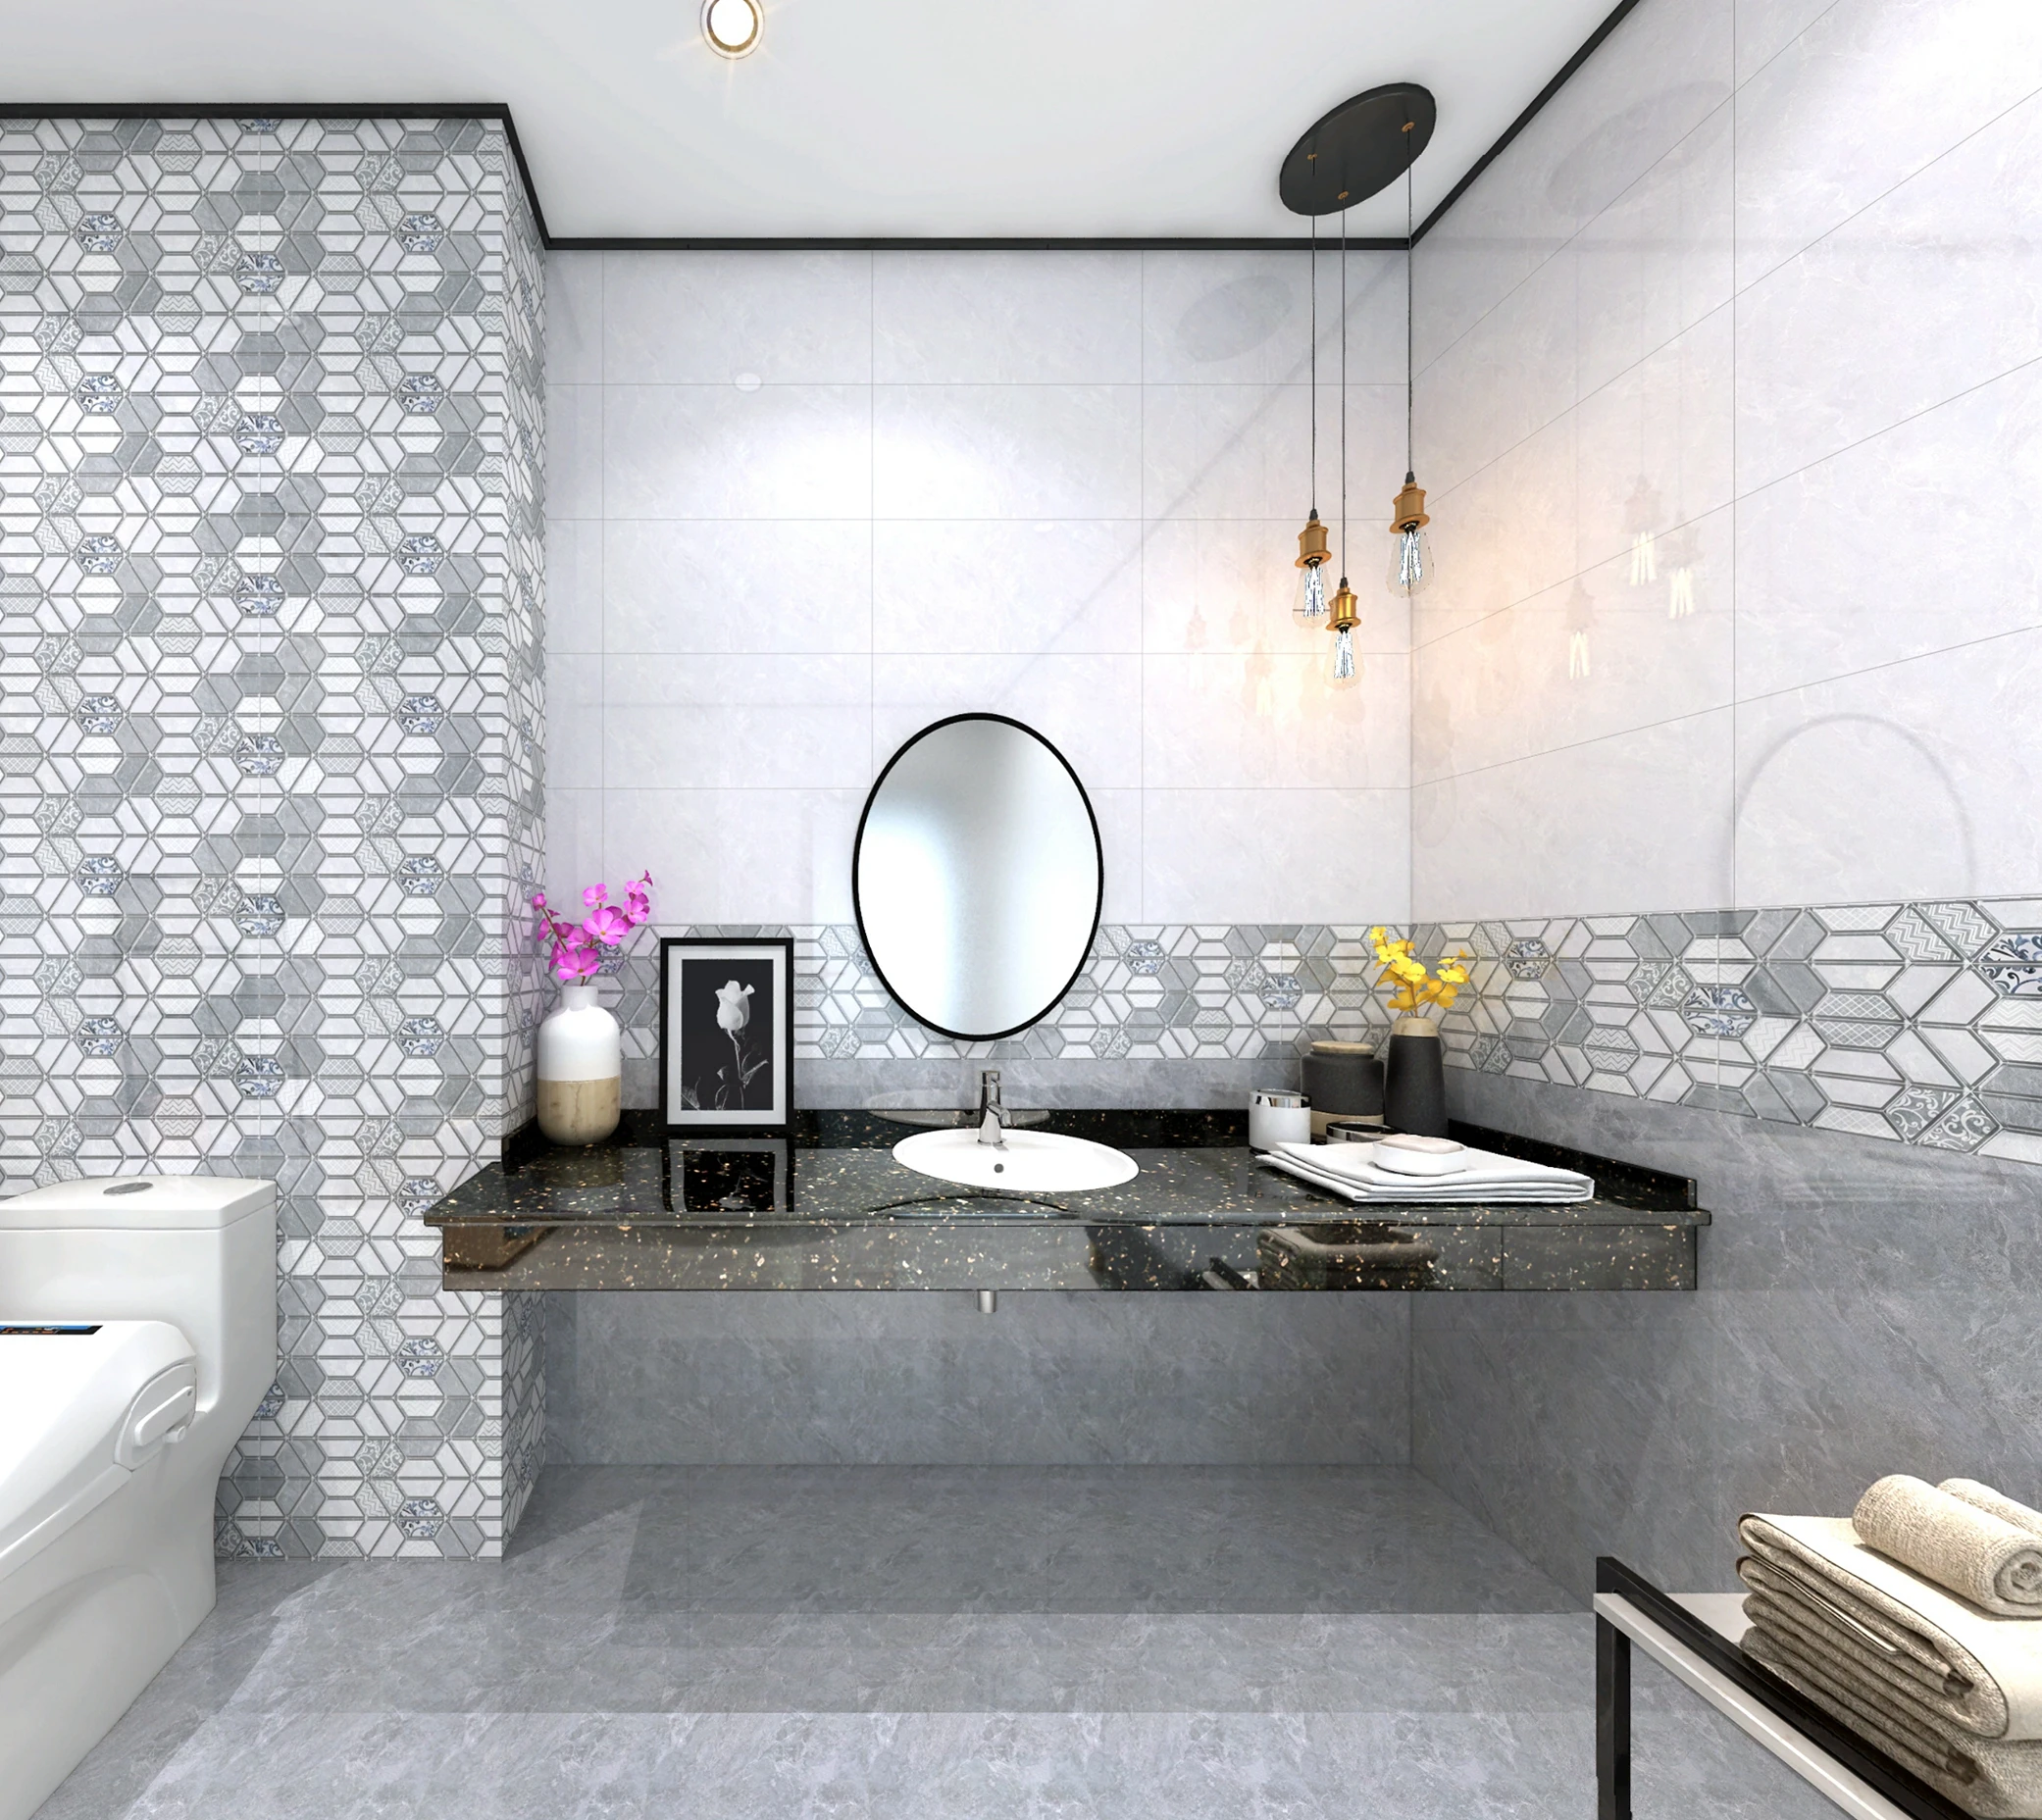 最高に見える家の装飾ガラス化フラッシュバスルームキッチン300x600壁レンガ300x300モルディブセラミック床タイル Buy 家の装飾ガラス固化体のタイル 浴室の台所の床タイル300x300 壁セラミックタイル300x600 Product On Alibaba Com